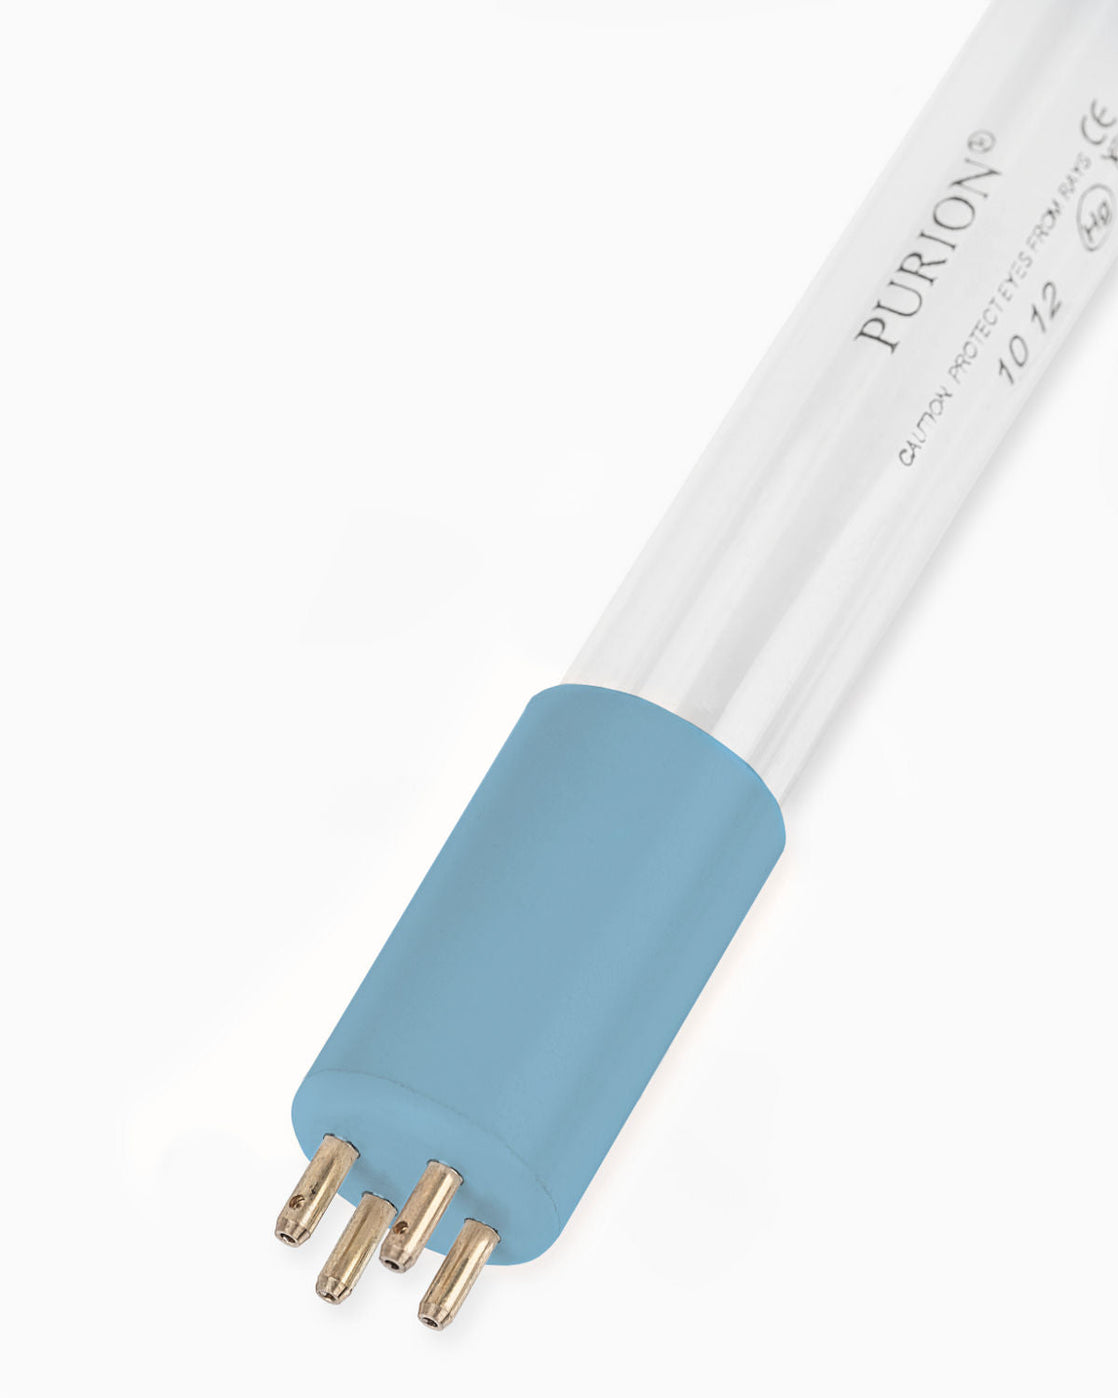 Eine Blaulichtröhre, die PURION IBC Universal 17W SPL BS OTC 12V/24V von UV Concept GmbH, entwickelt zur Beseitigung von Verkeimungen (Kontaminationen) in Trinkwasserqualität auf weißem Hintergrund.